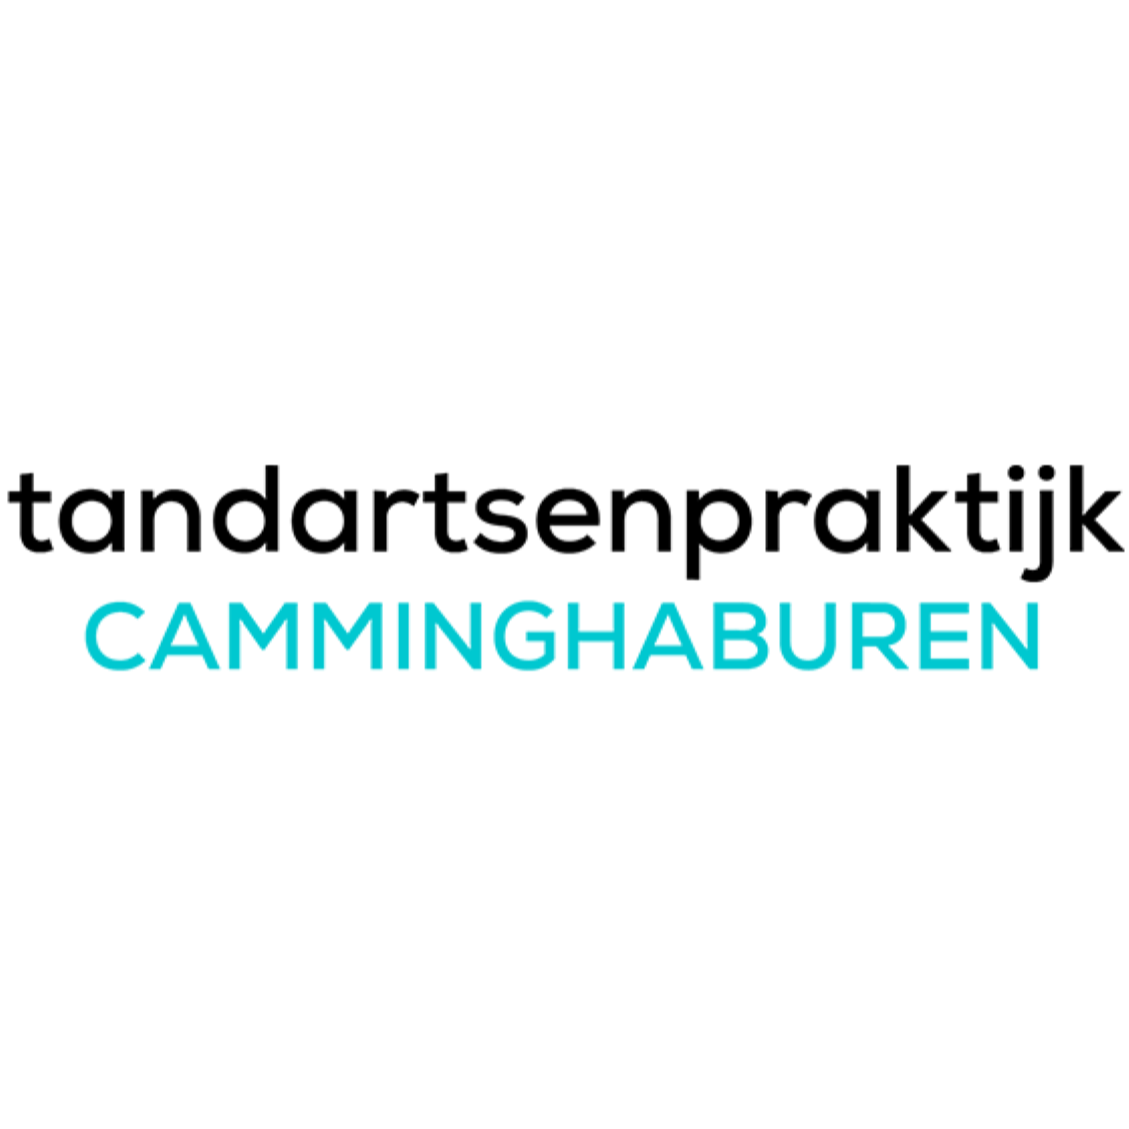 Tandartsenpraktijk Camminghaburen Logo